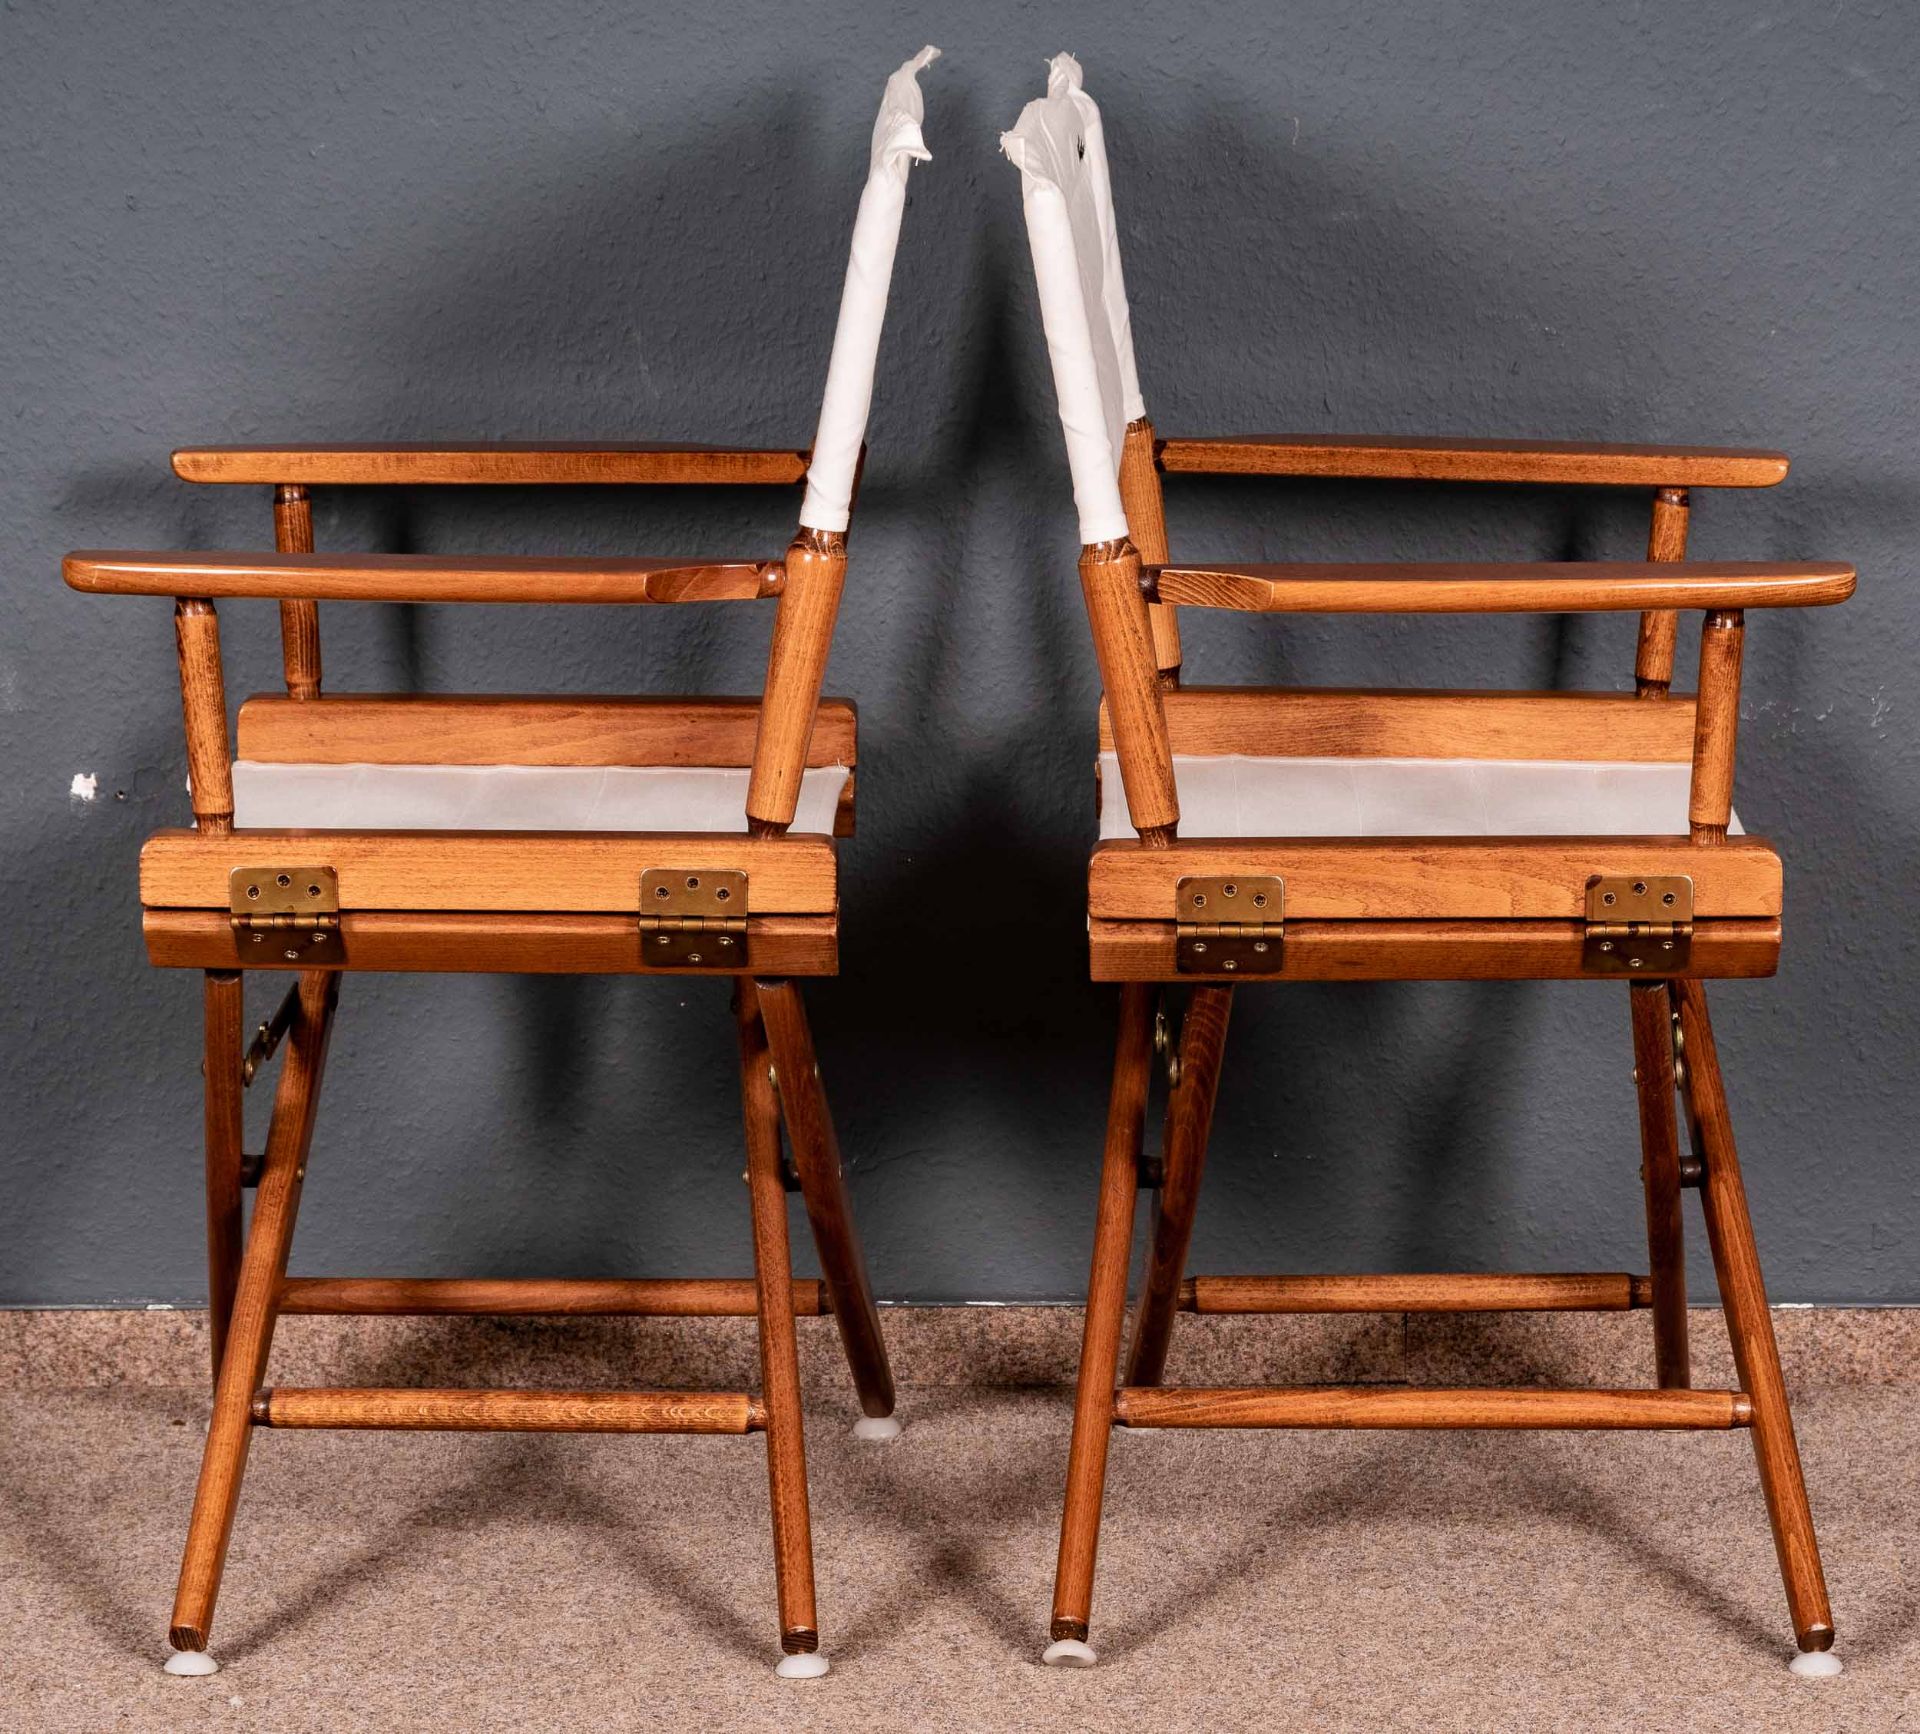 Paar Regiestühle der Marke "Herlag", letztes Viertel 20. Jhdt., nussbaumfarbig gebeiztes und lackie - Bild 6 aus 9